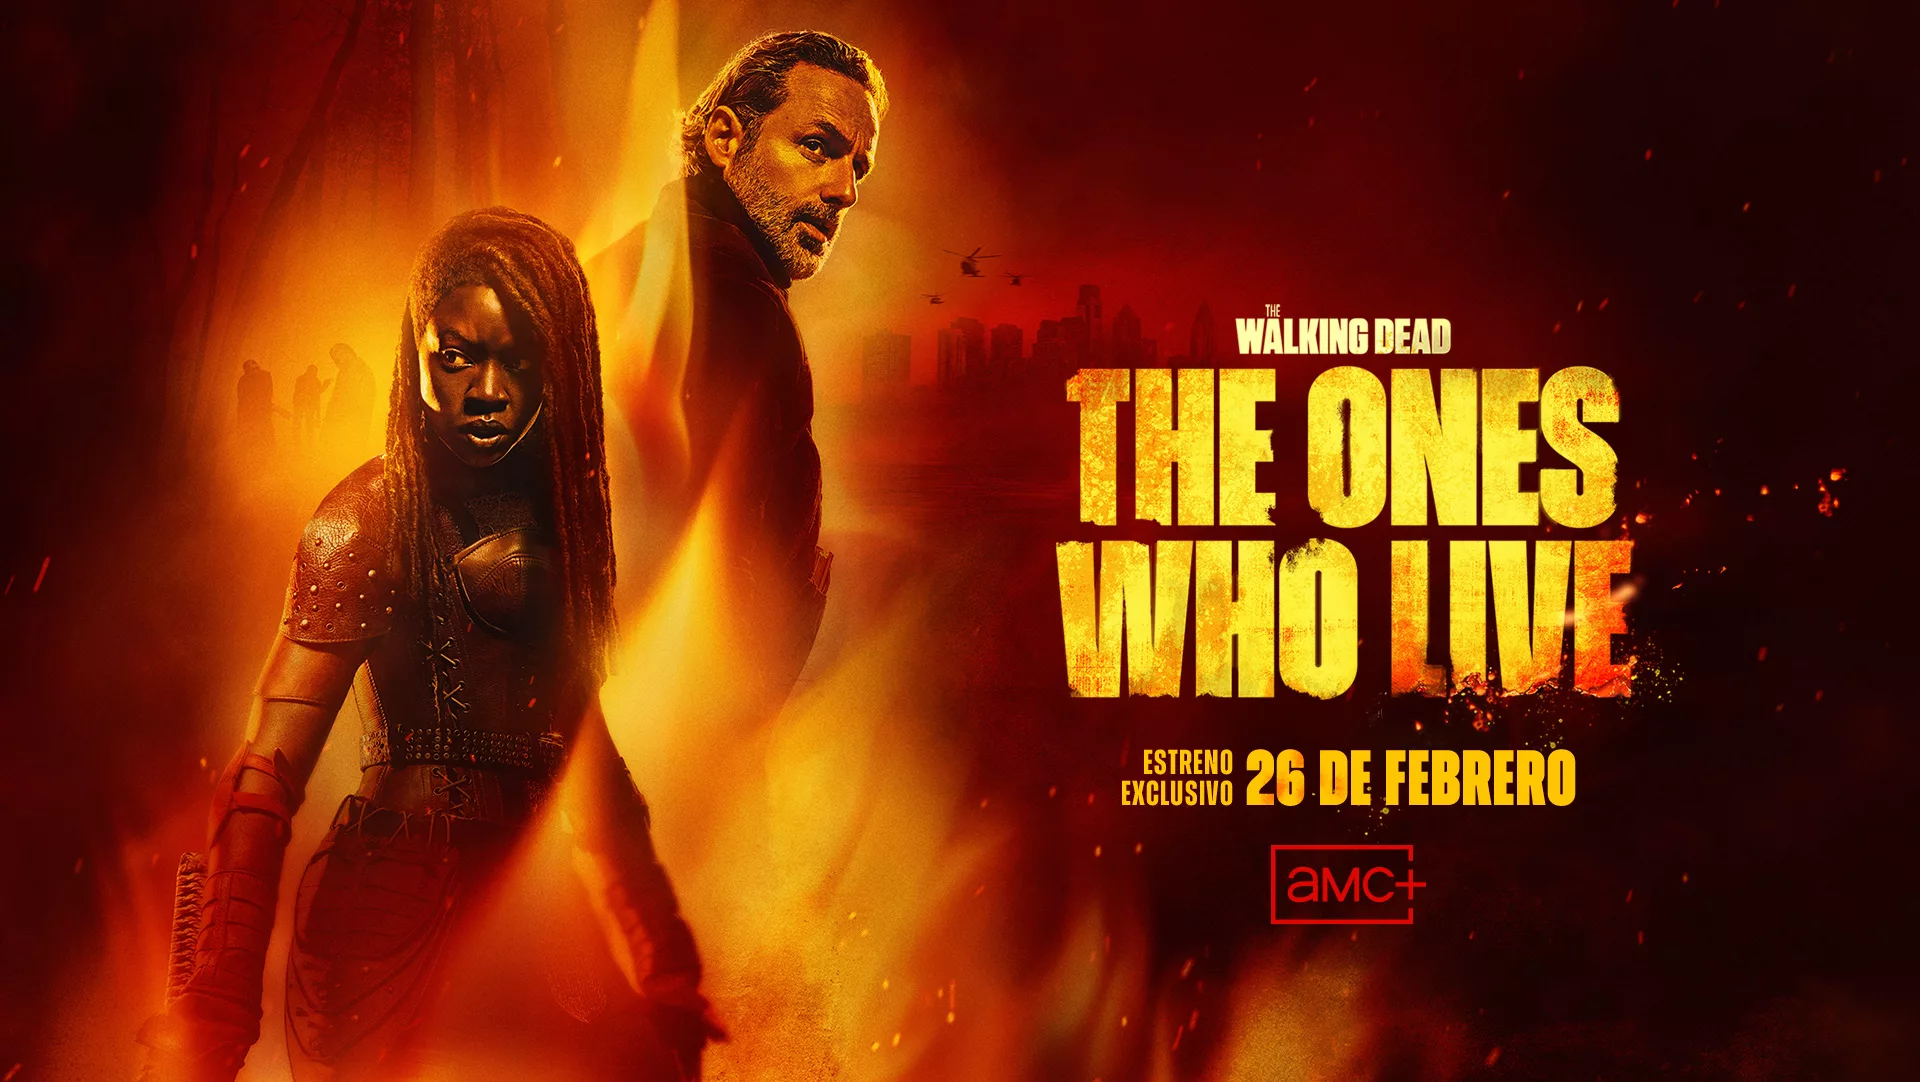 AMC+ lanza el póster oficial y un nuevo tráiler de su serie original The Walking Dead: The Ones Who Live